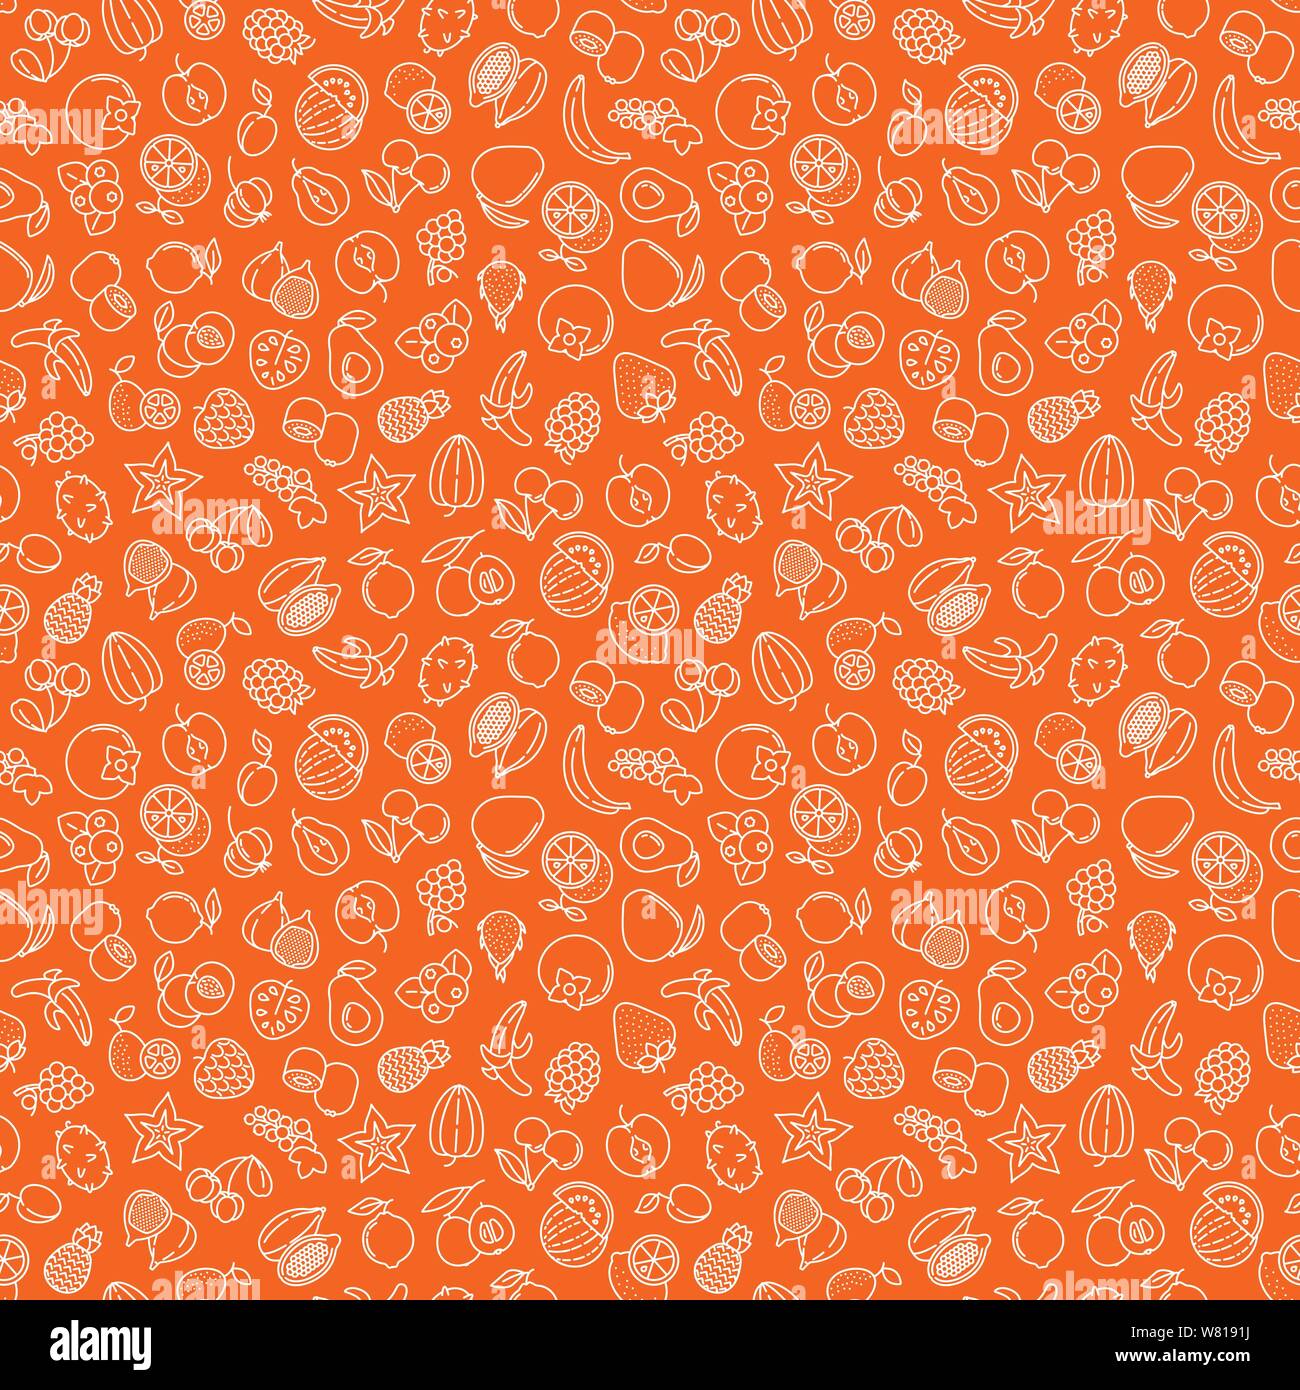 Die nahtlose Vektor Tapete mit verschiedenen Früchten Symbole. Weiß skizzierte Symbole auf tangerine Hintergrund. Essen Abbildung. Stock Vektor